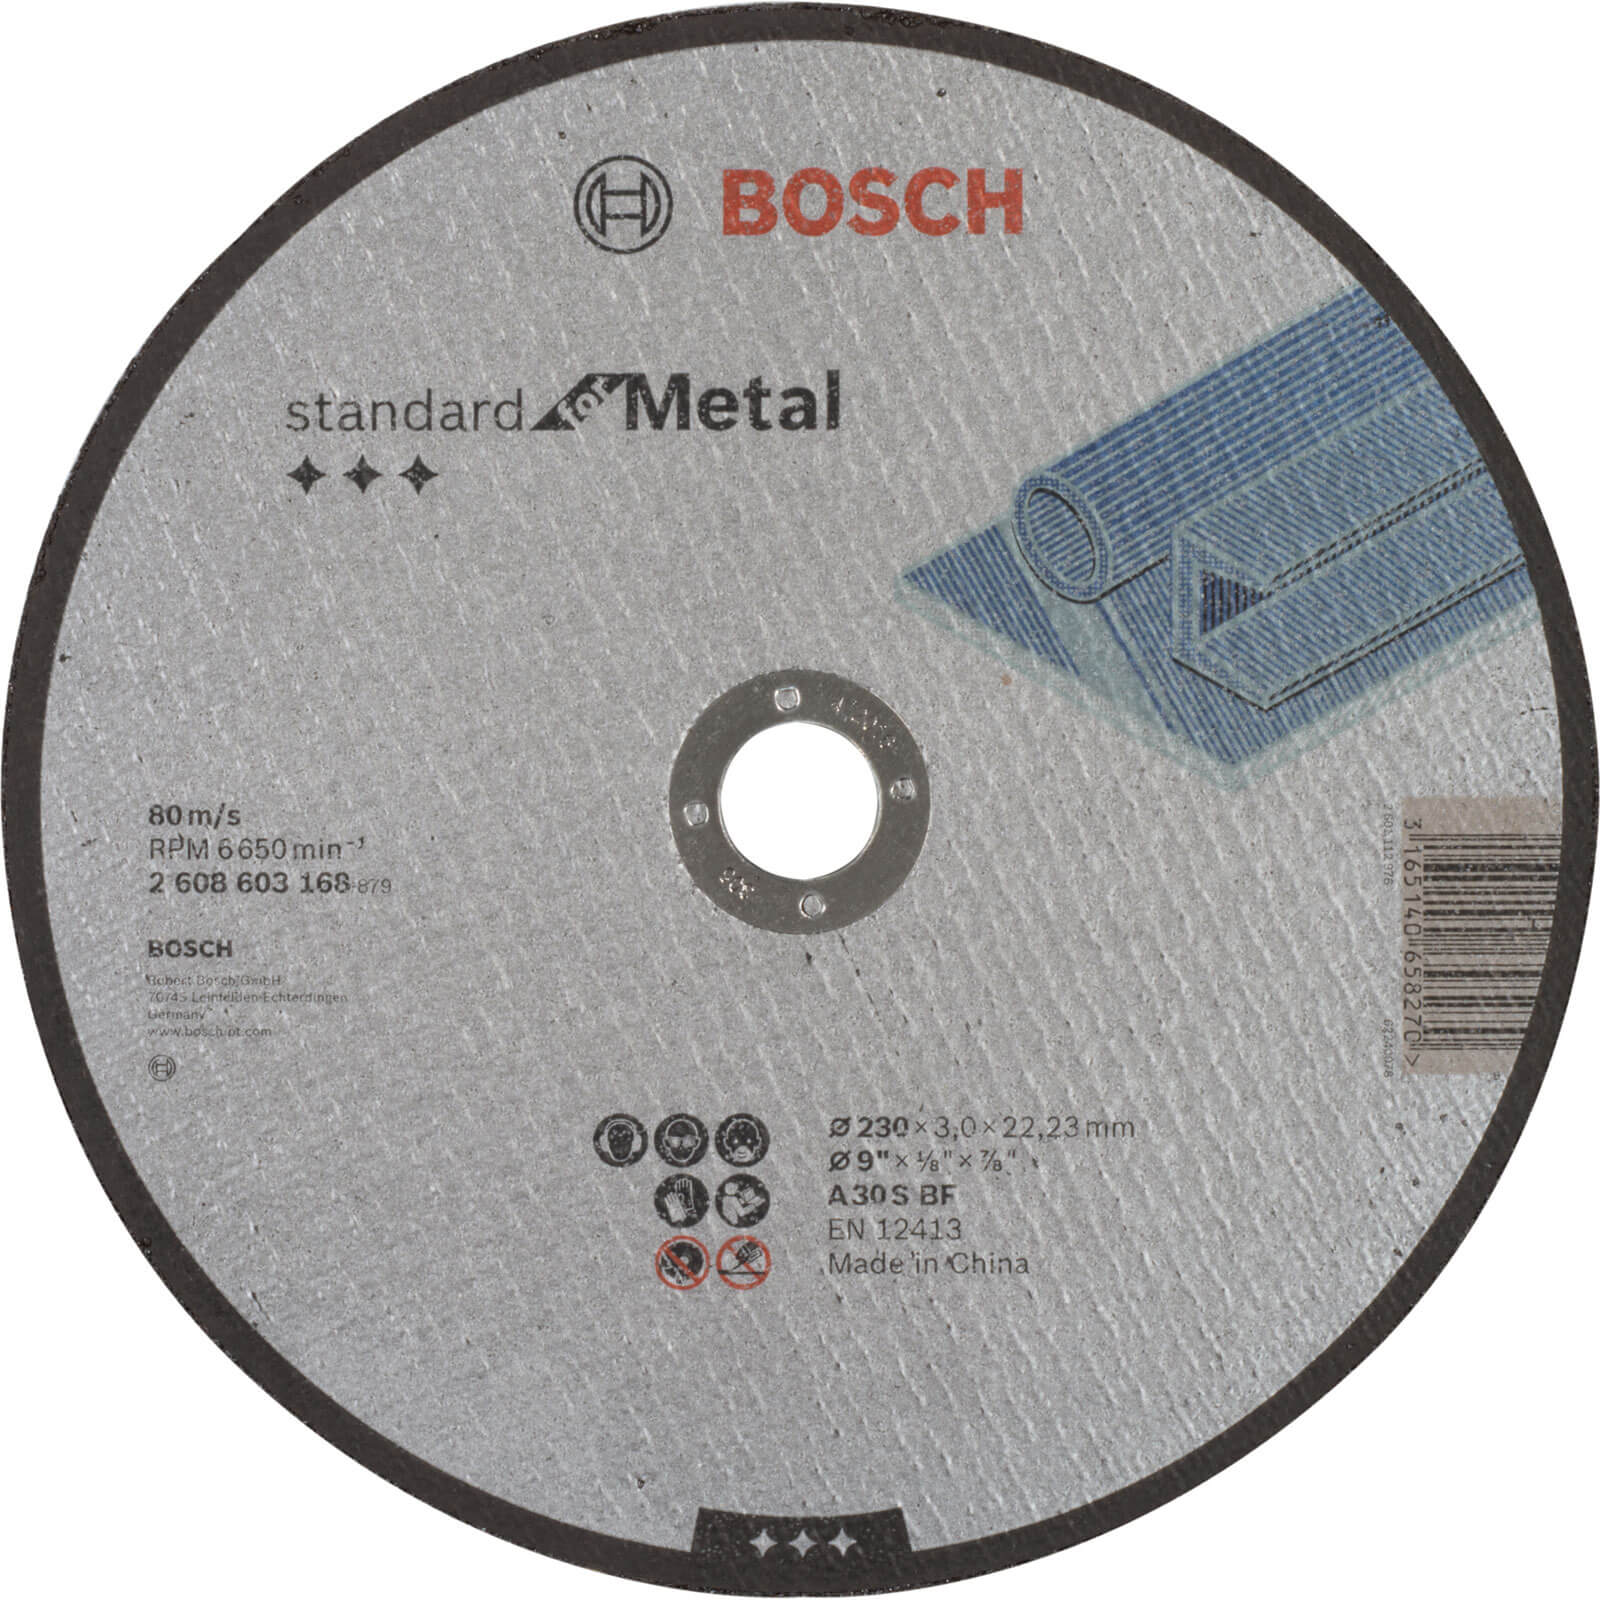 Photo of Bosch Standard Metal Cutting Disc 230mm 3mm 22mm